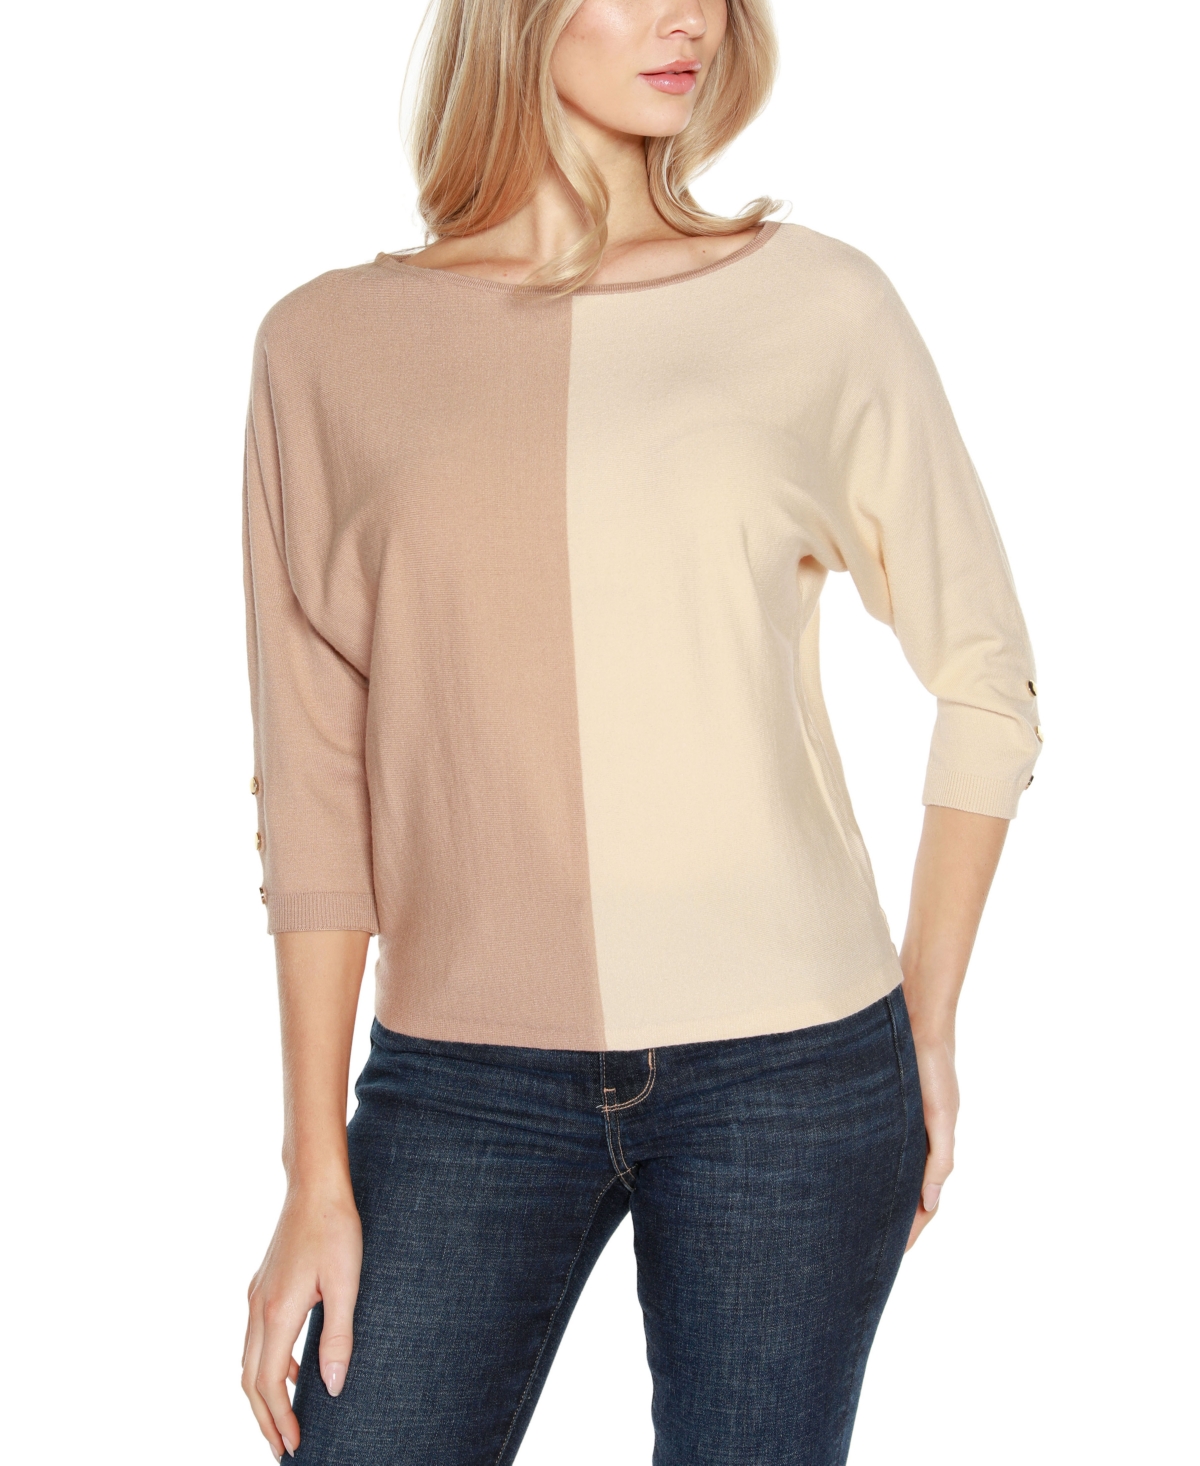 Women's Colorblock 3/4-Sleeve Dolman Sweater - Ppnkbgmg